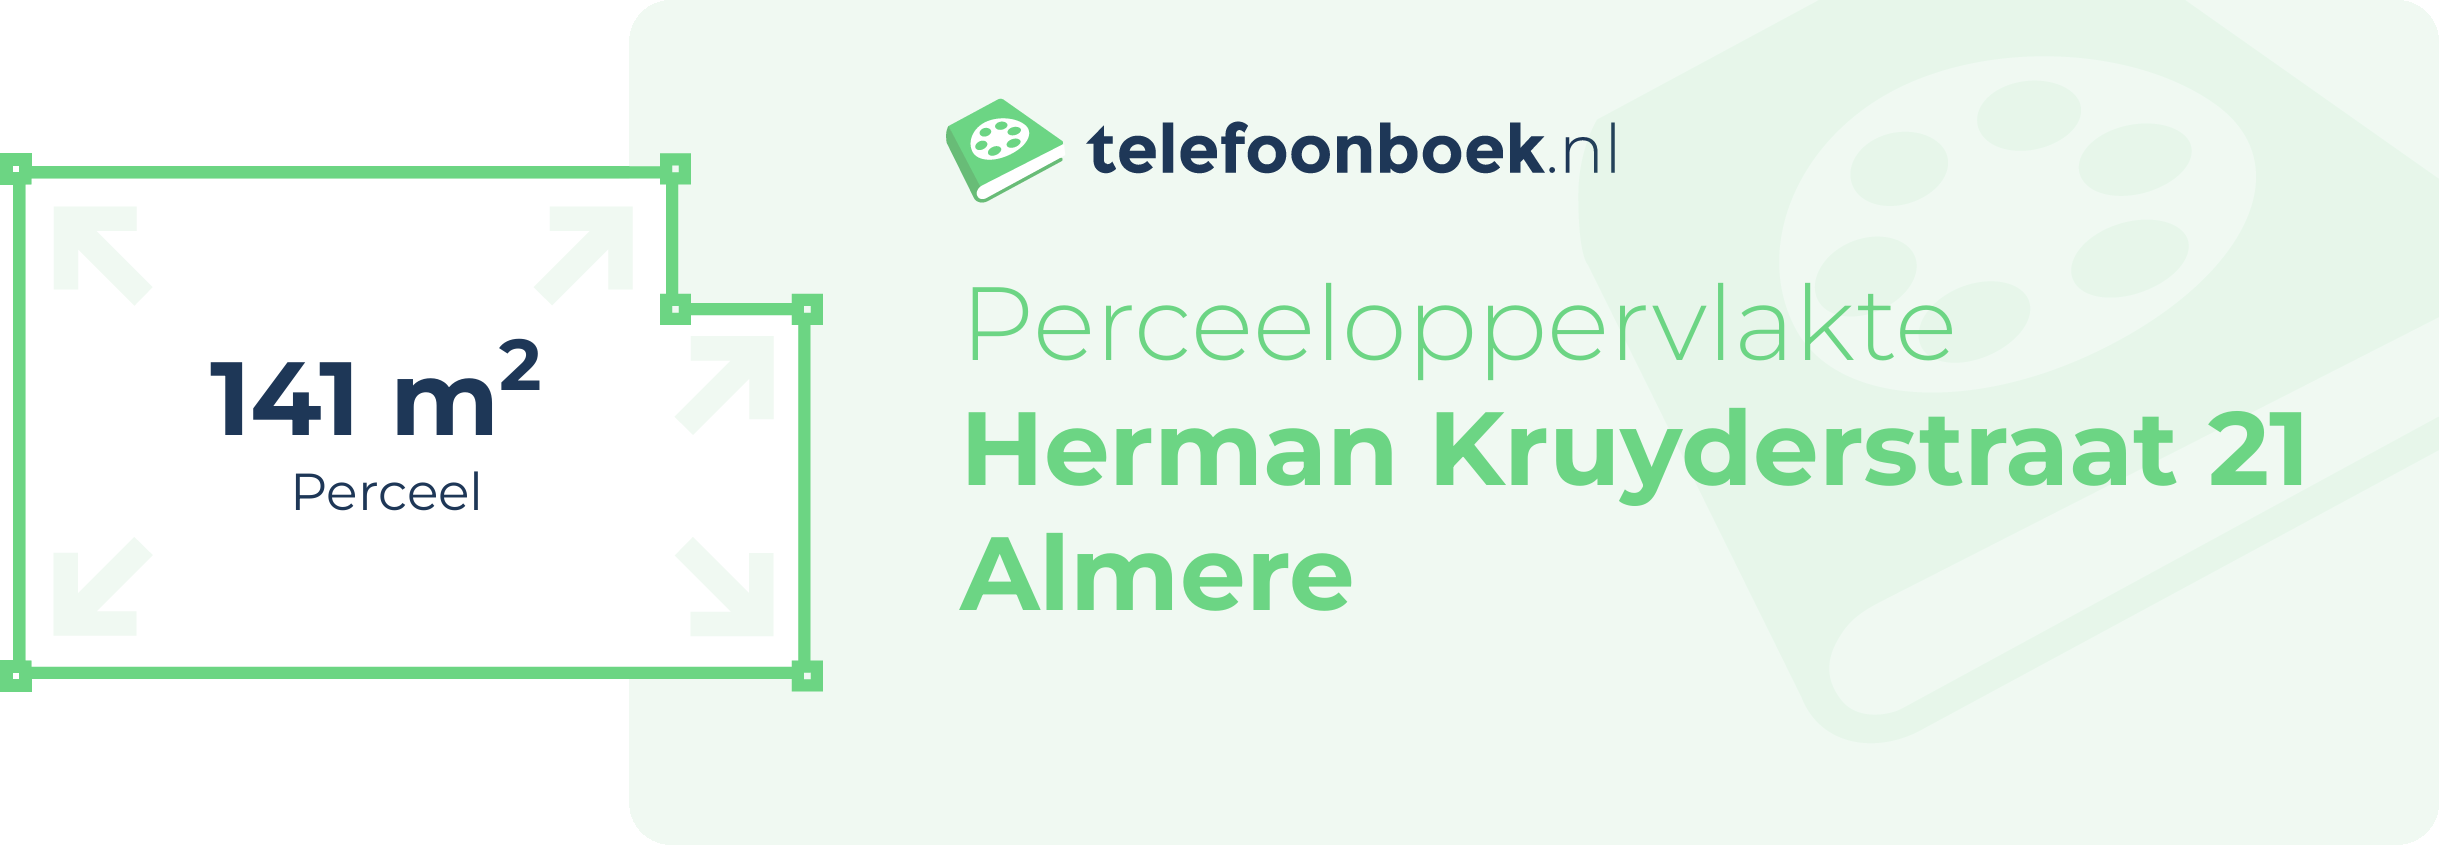 Perceeloppervlakte Herman Kruyderstraat 21 Almere